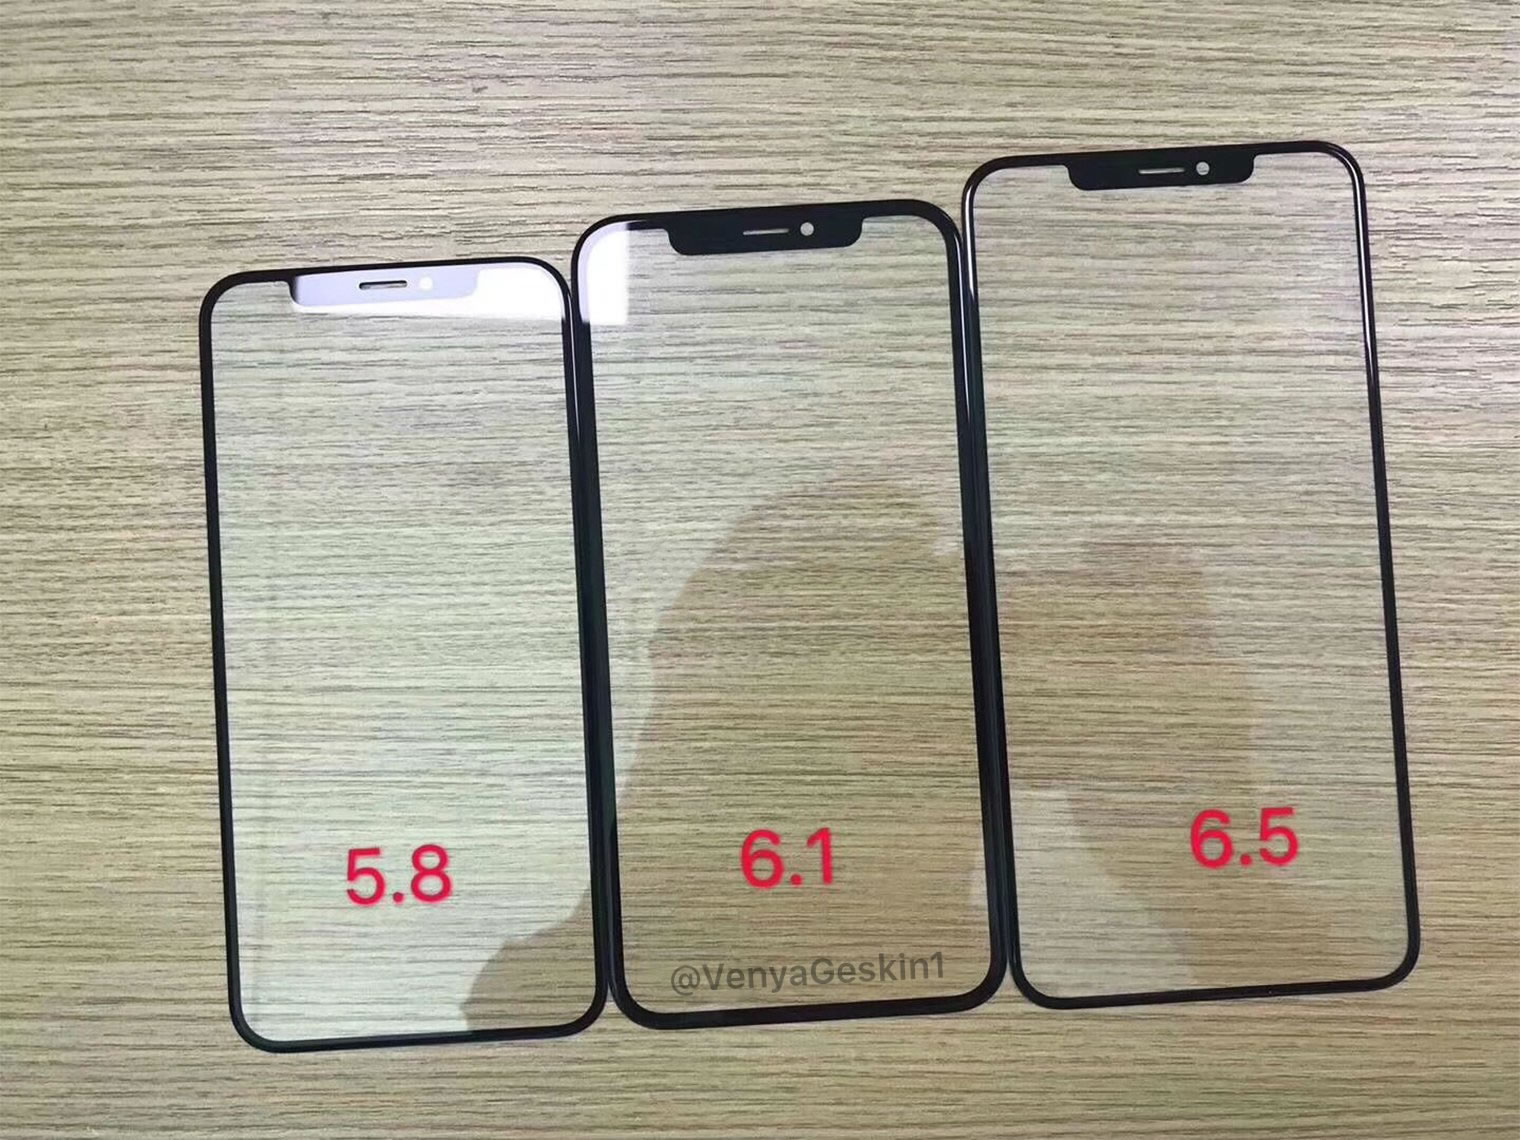 Yeni iPhone'ların sızan ekran panelleri, modellerin boyut farkını ortaya koyuyor